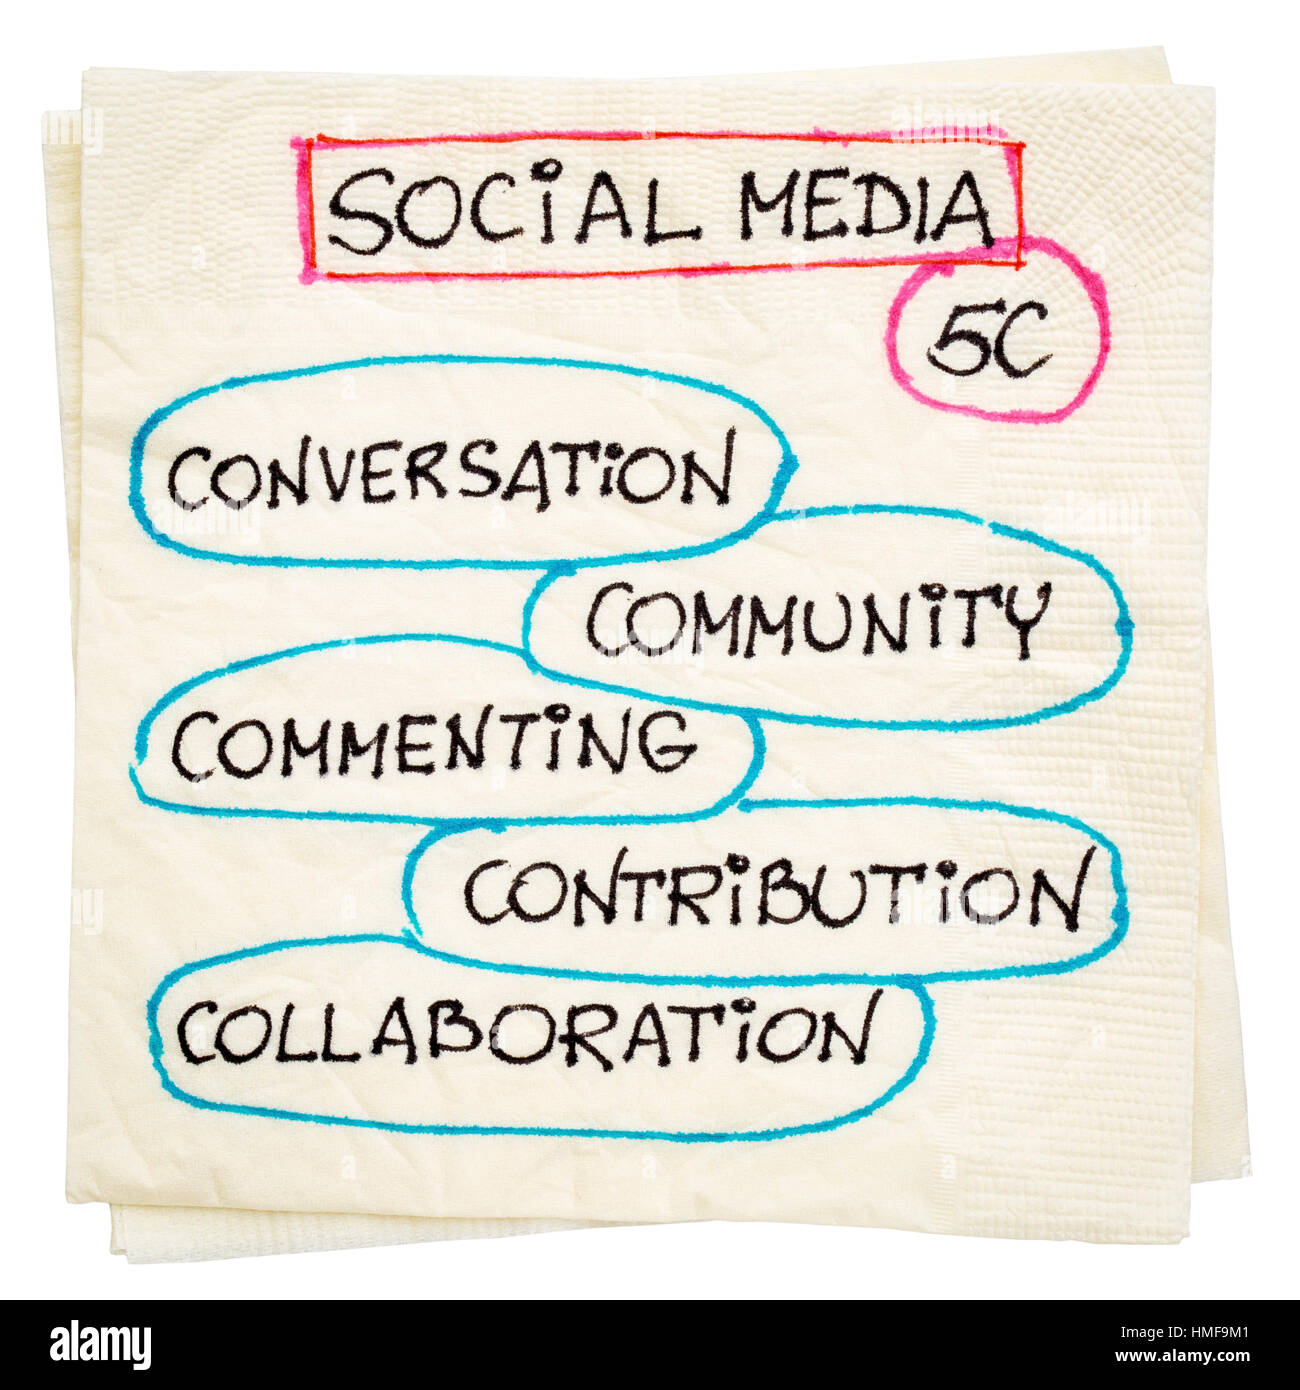 Gespräch, Gemeinschaft, kommentieren, Zusammenarbeit, Beitrag - social-Media-5C-Konzept - Serviette Doodle mit einem Beschneidungspfad isoliert Stockfoto